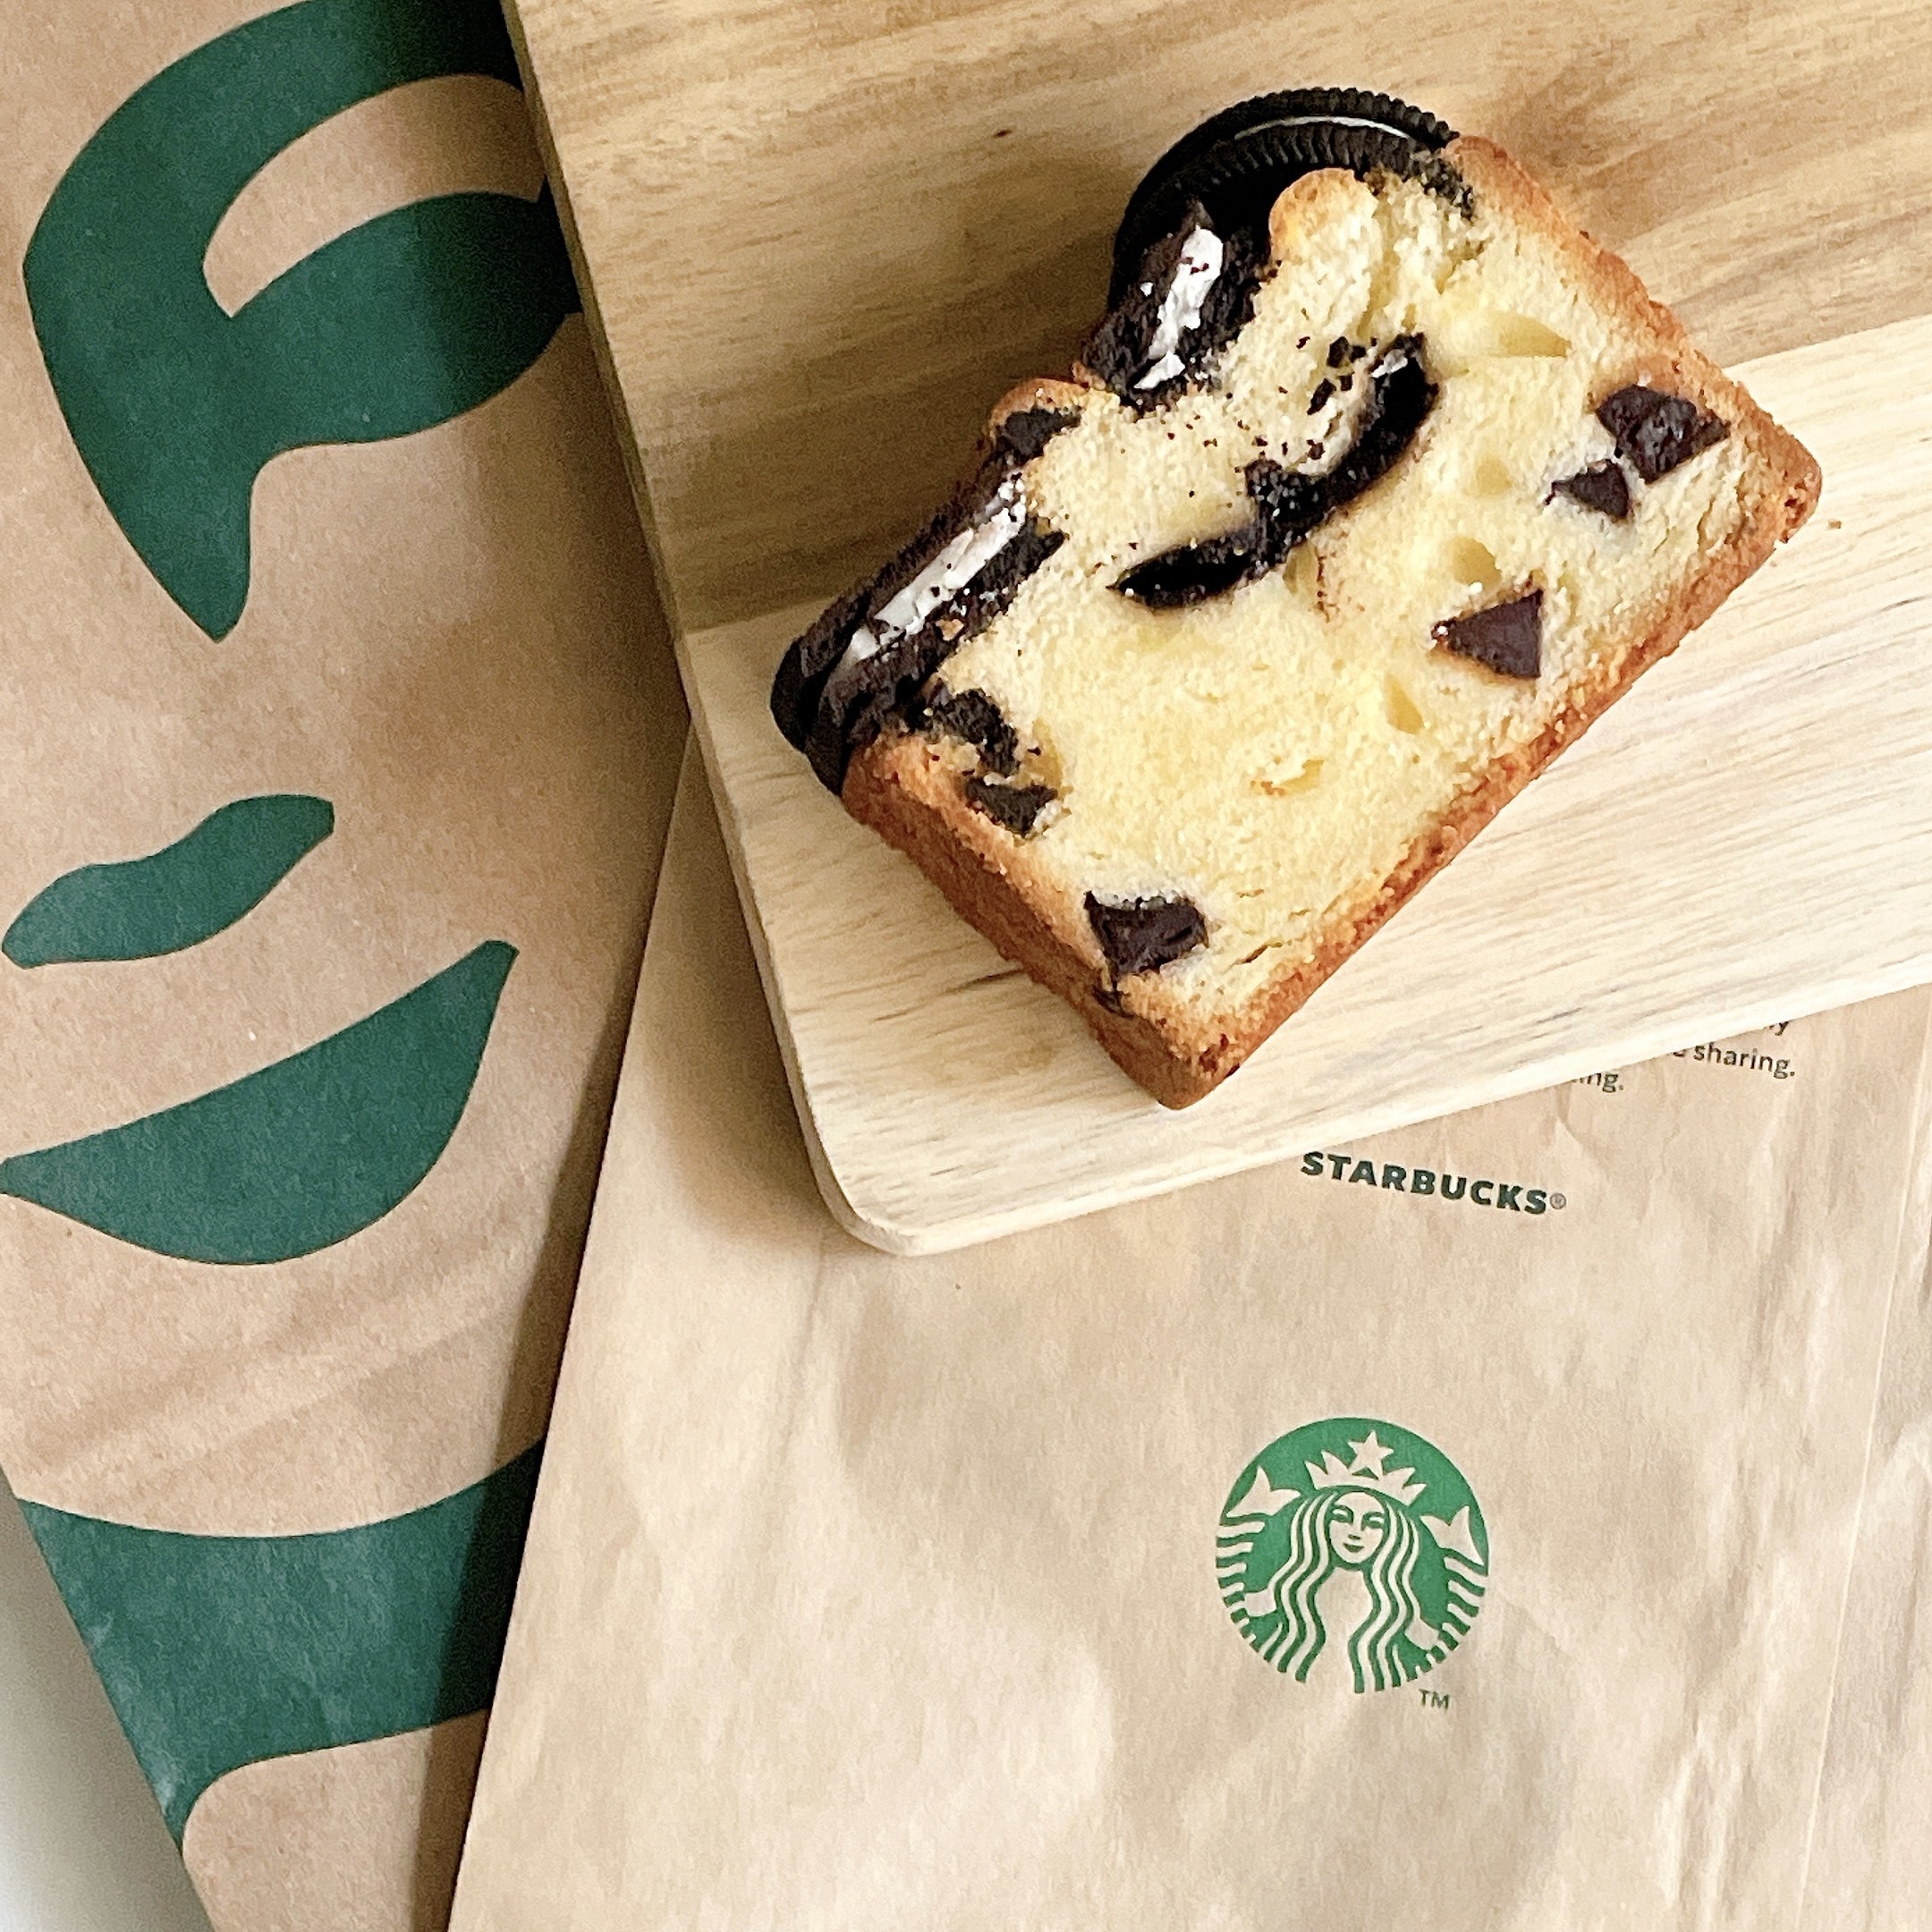 Starbucks Coffee（スターバックスコーヒー）のおすすめのフード「クッキーとチョコレートのパウンドケーキ」